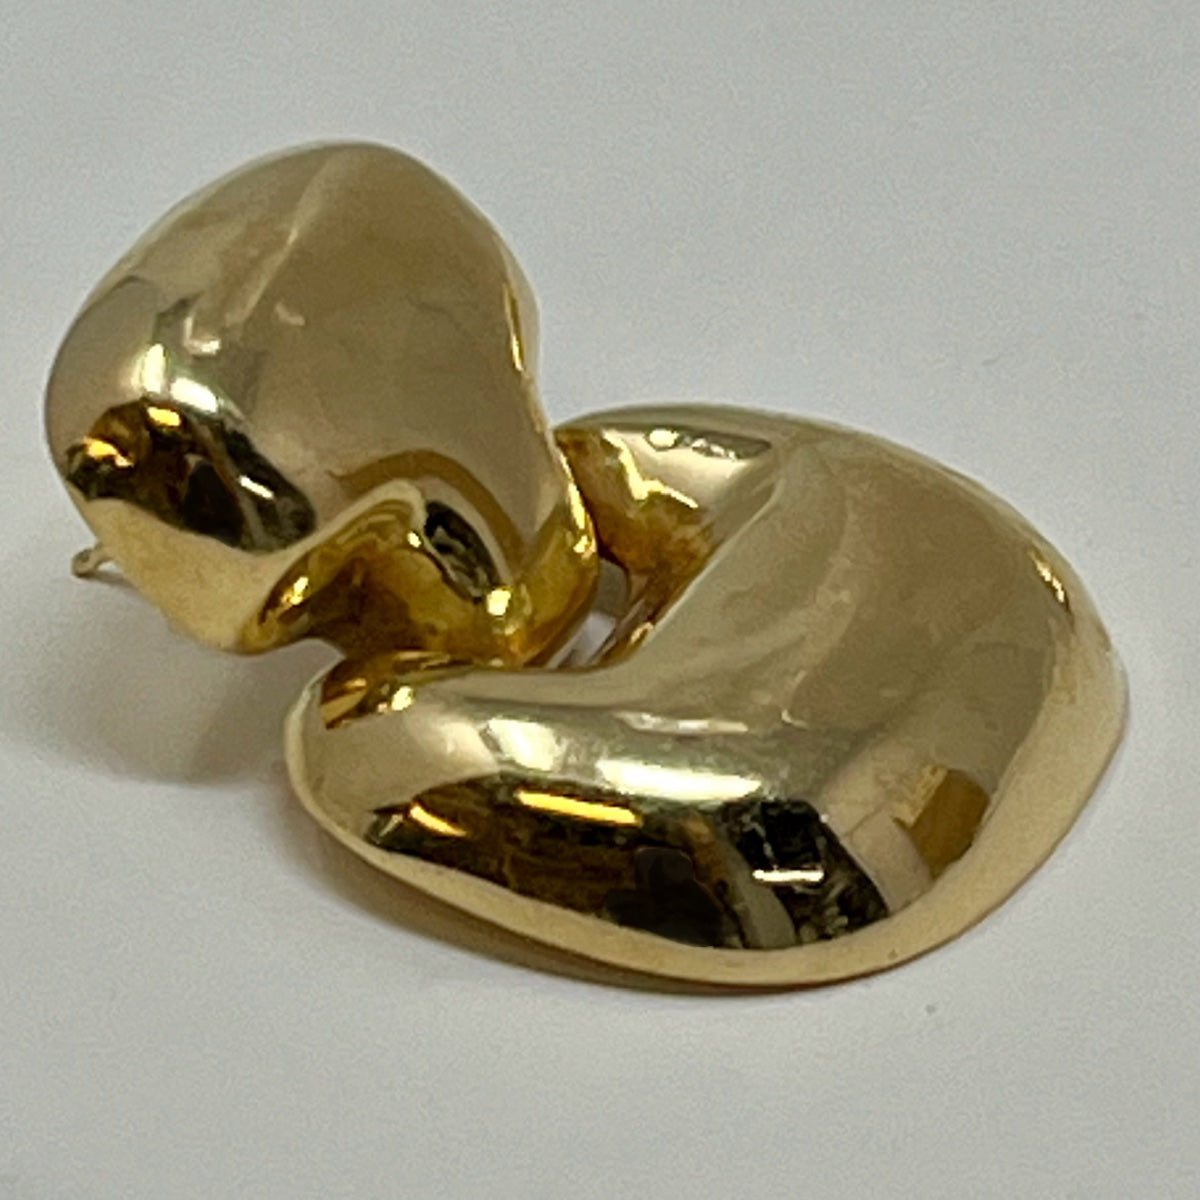 14K Gold Earrings